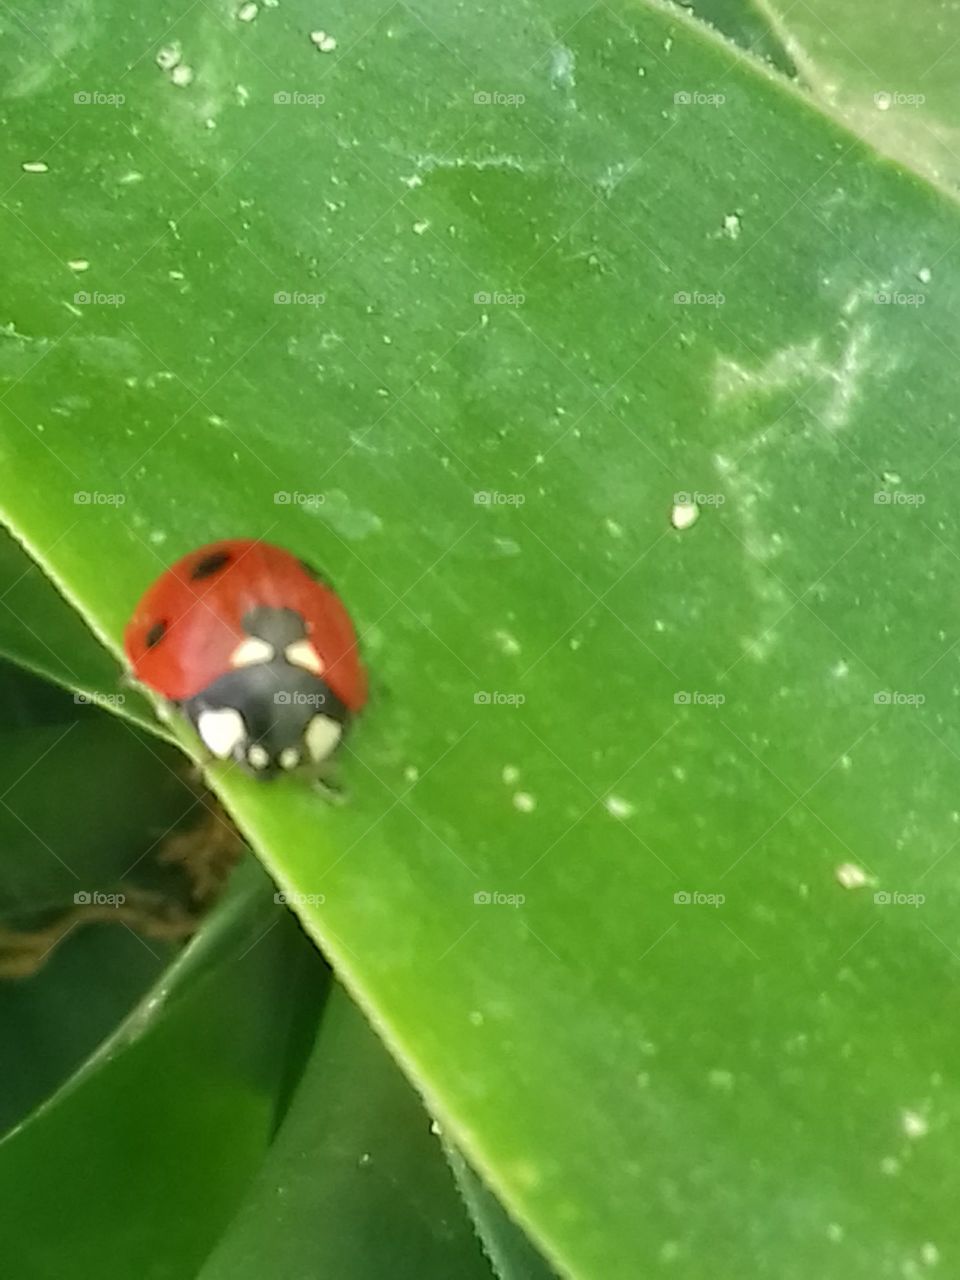 my friend ladybug